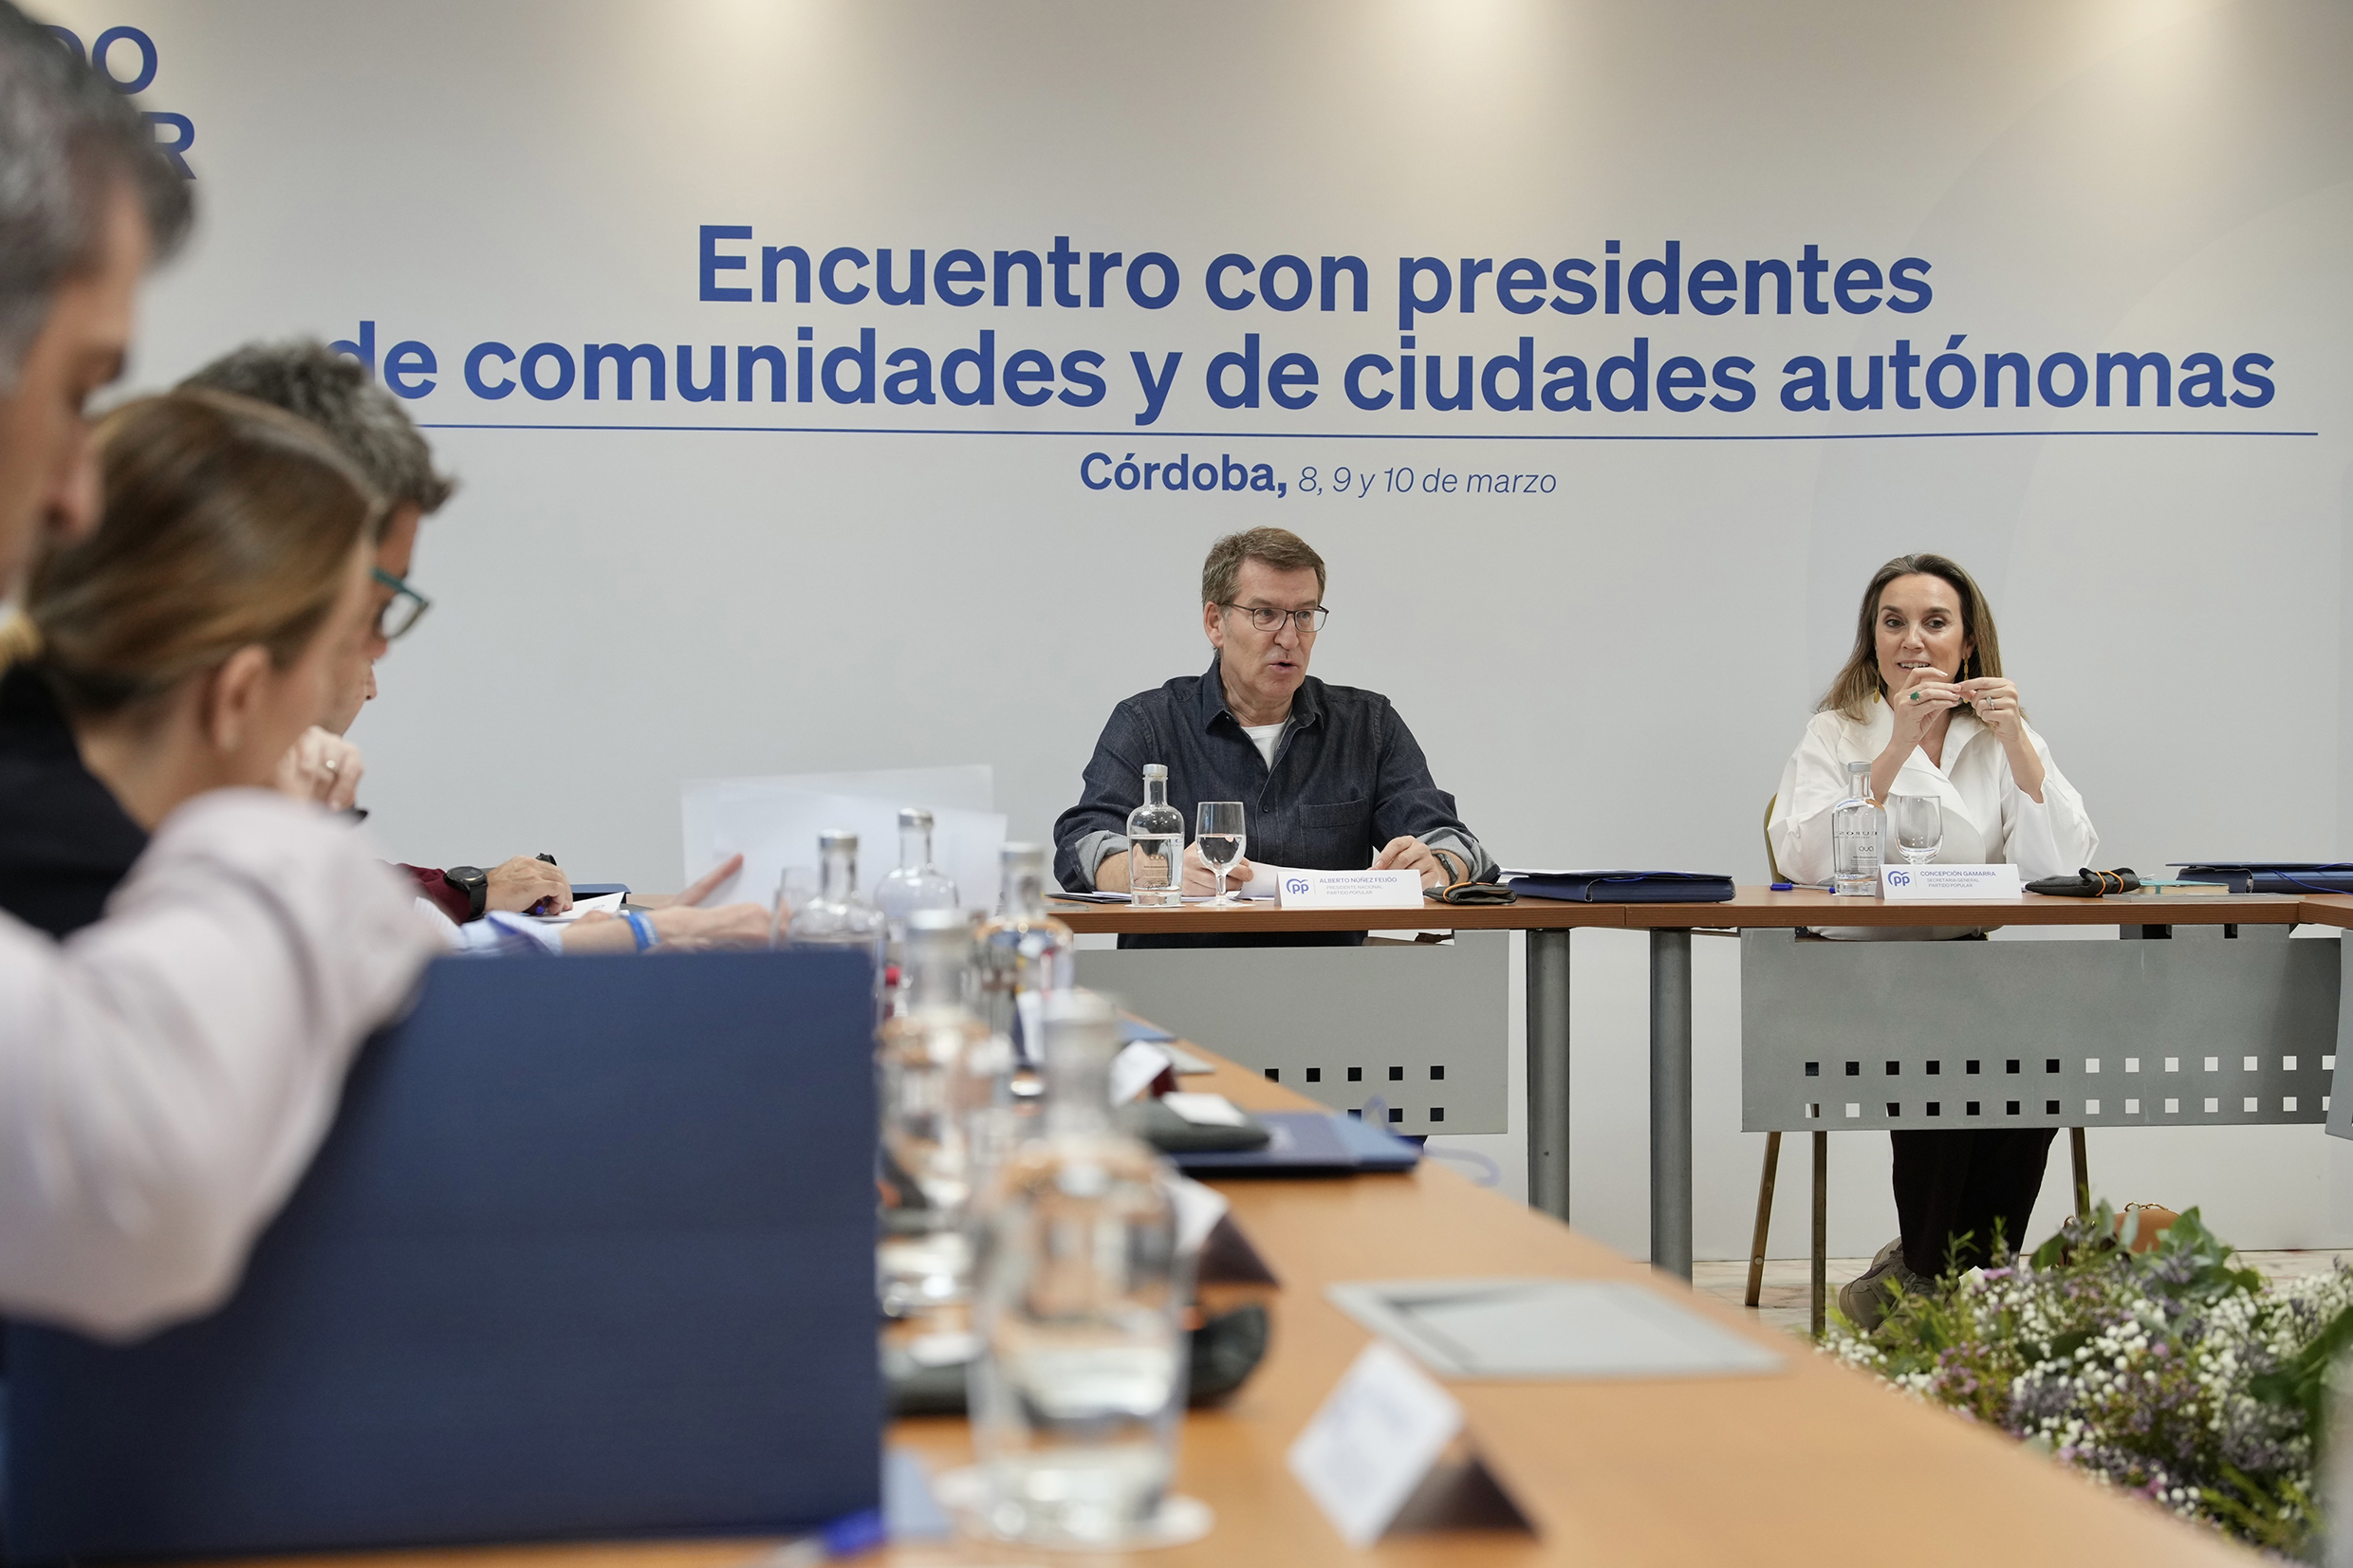 El PP aprueba la 'Declaración de Córdoba' contra la "corrupción política" del Gobierno